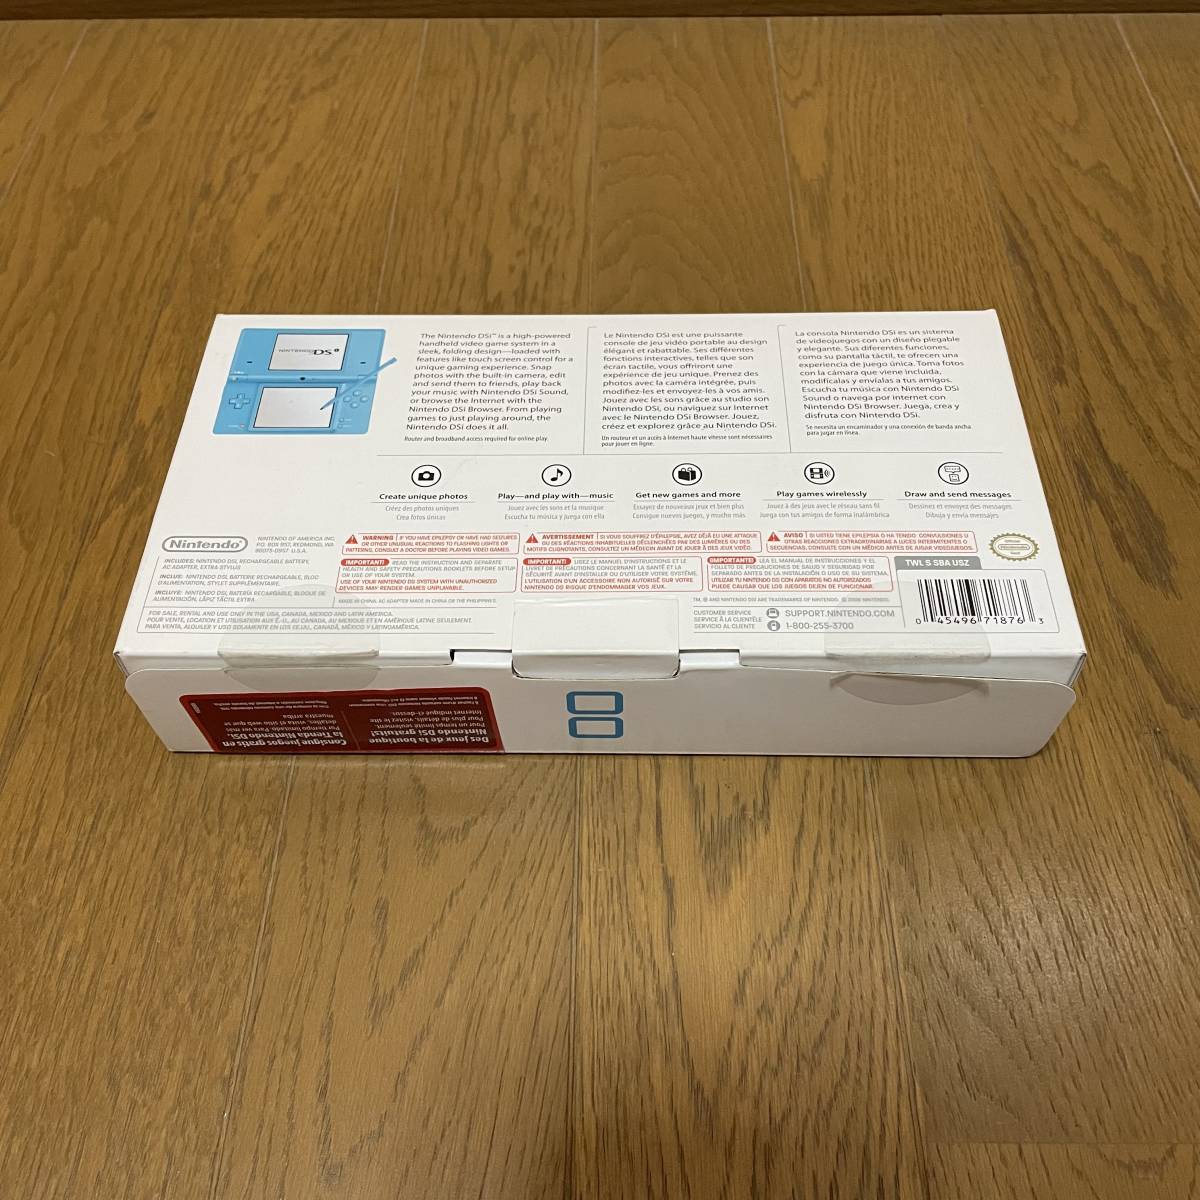  Nintendo DSi коврик голубой корпус полный комплект Северная Америка версия ограничение цвет коробка инструкция имеется прекрасный товар иностранная версия Nintendo nintendo анонимность рассылка 